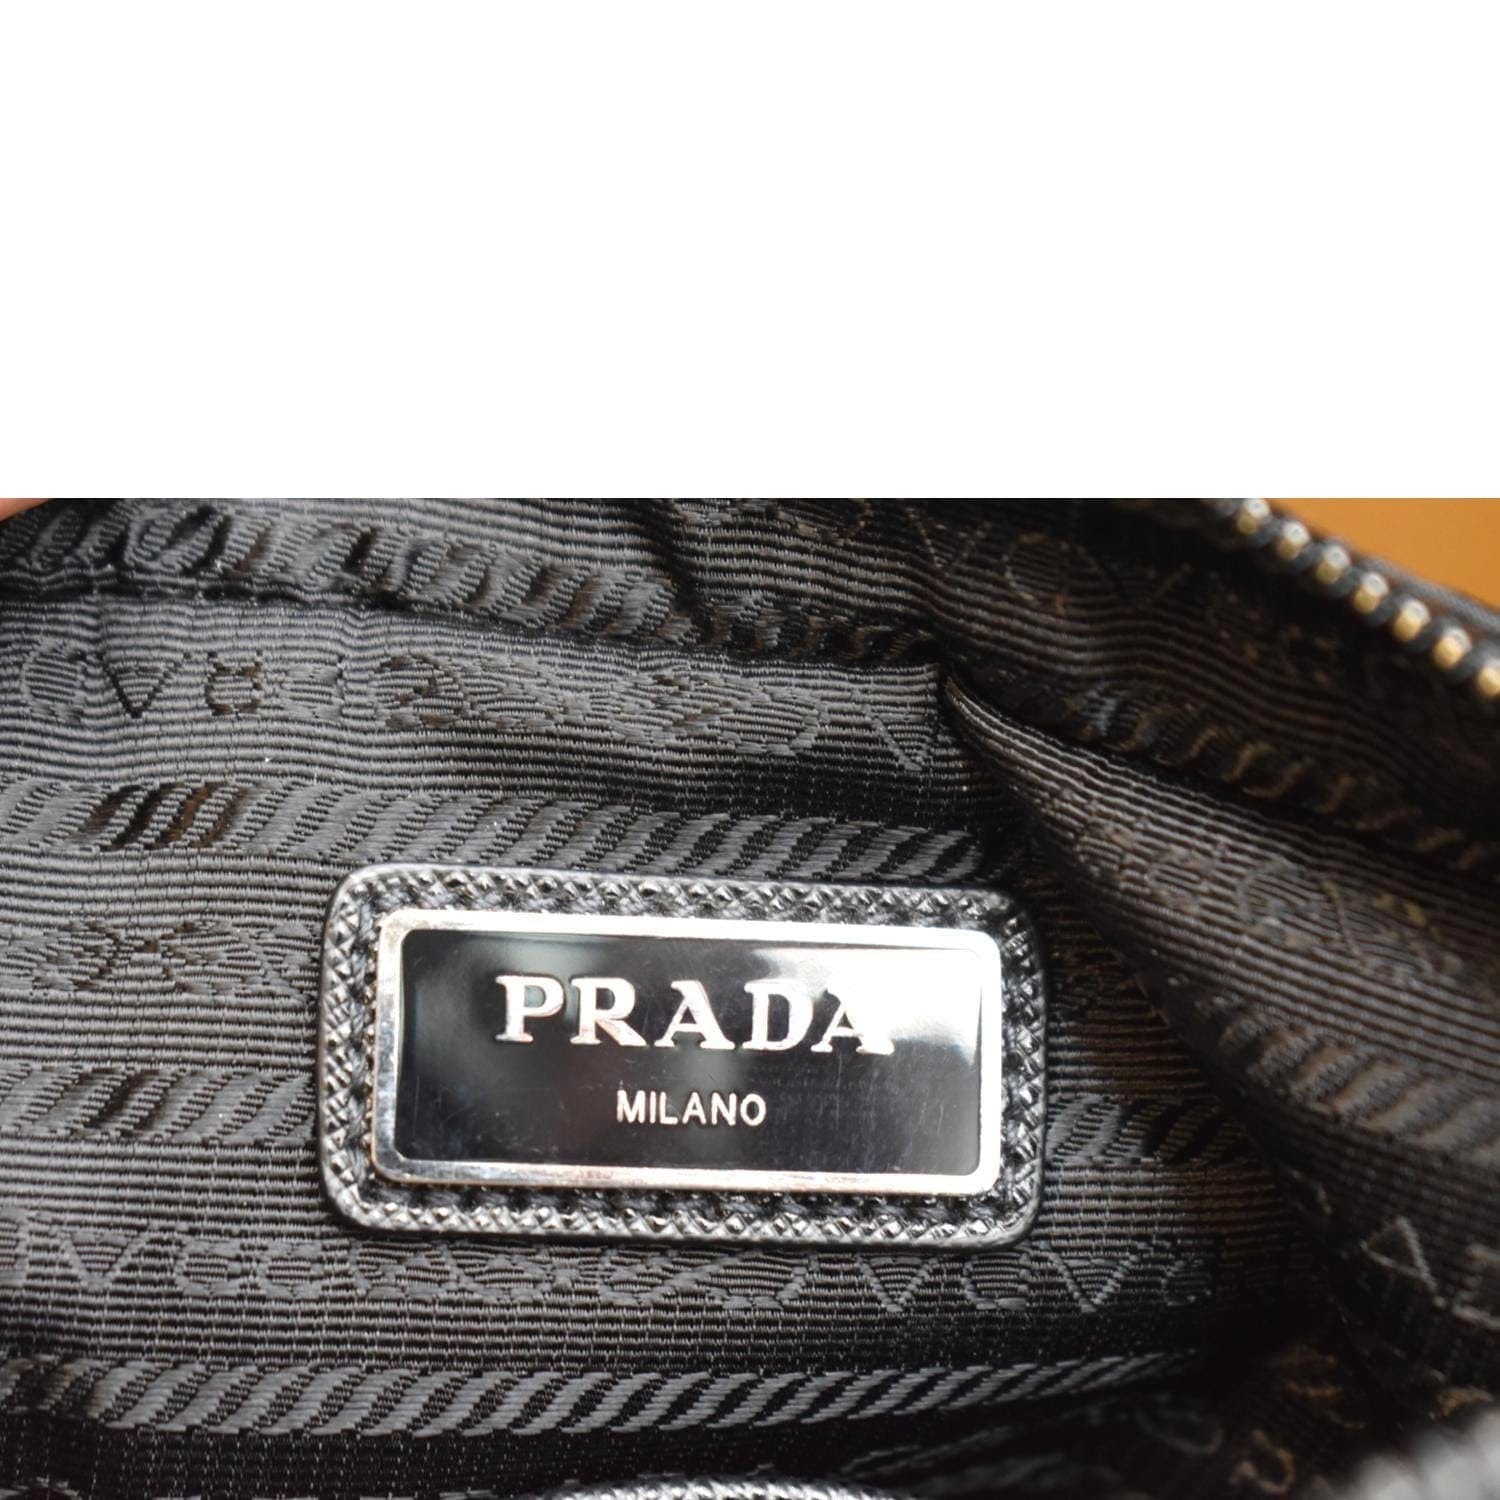 Prada Milano Bag 